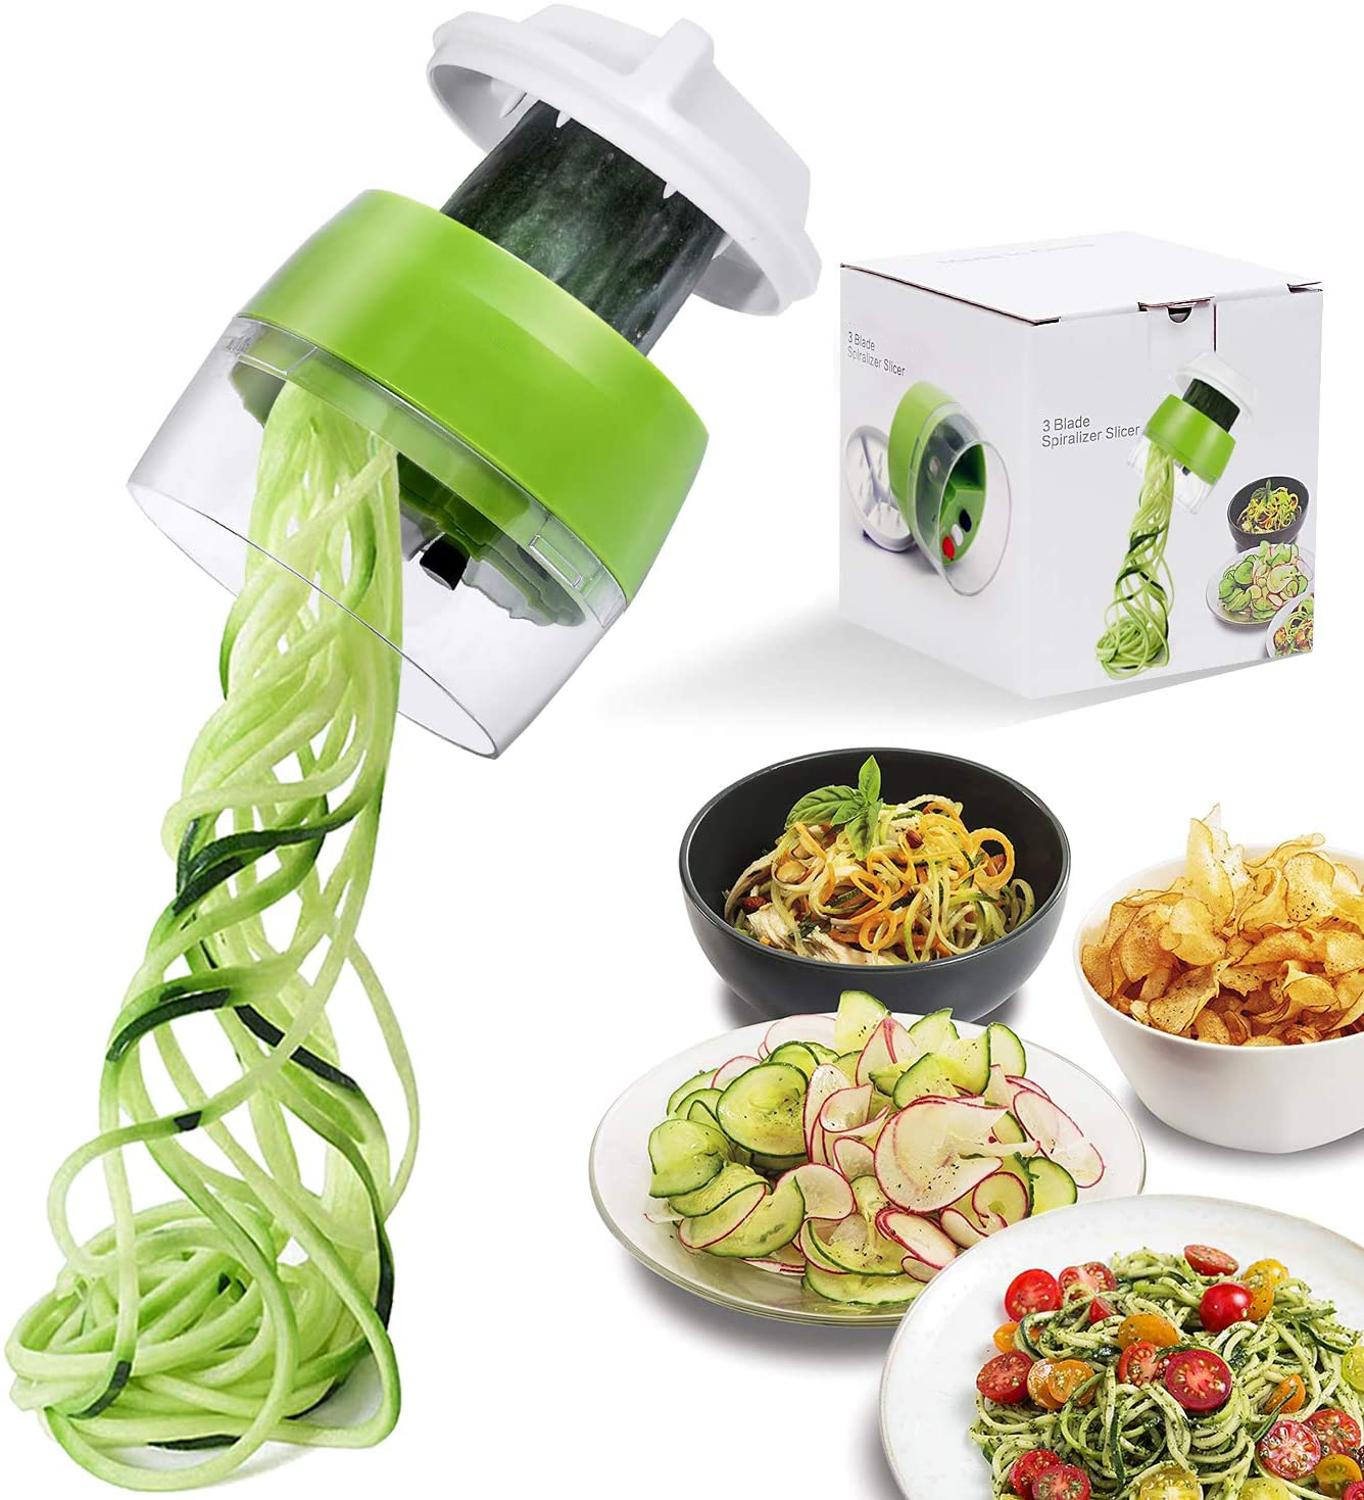 Handheld Spiralizer Vegetable Fruit Slicer 4 in 1 Adjustable Spiral Grater Cutter Salad Tools Zucchini Noodle Spaghetti Maker